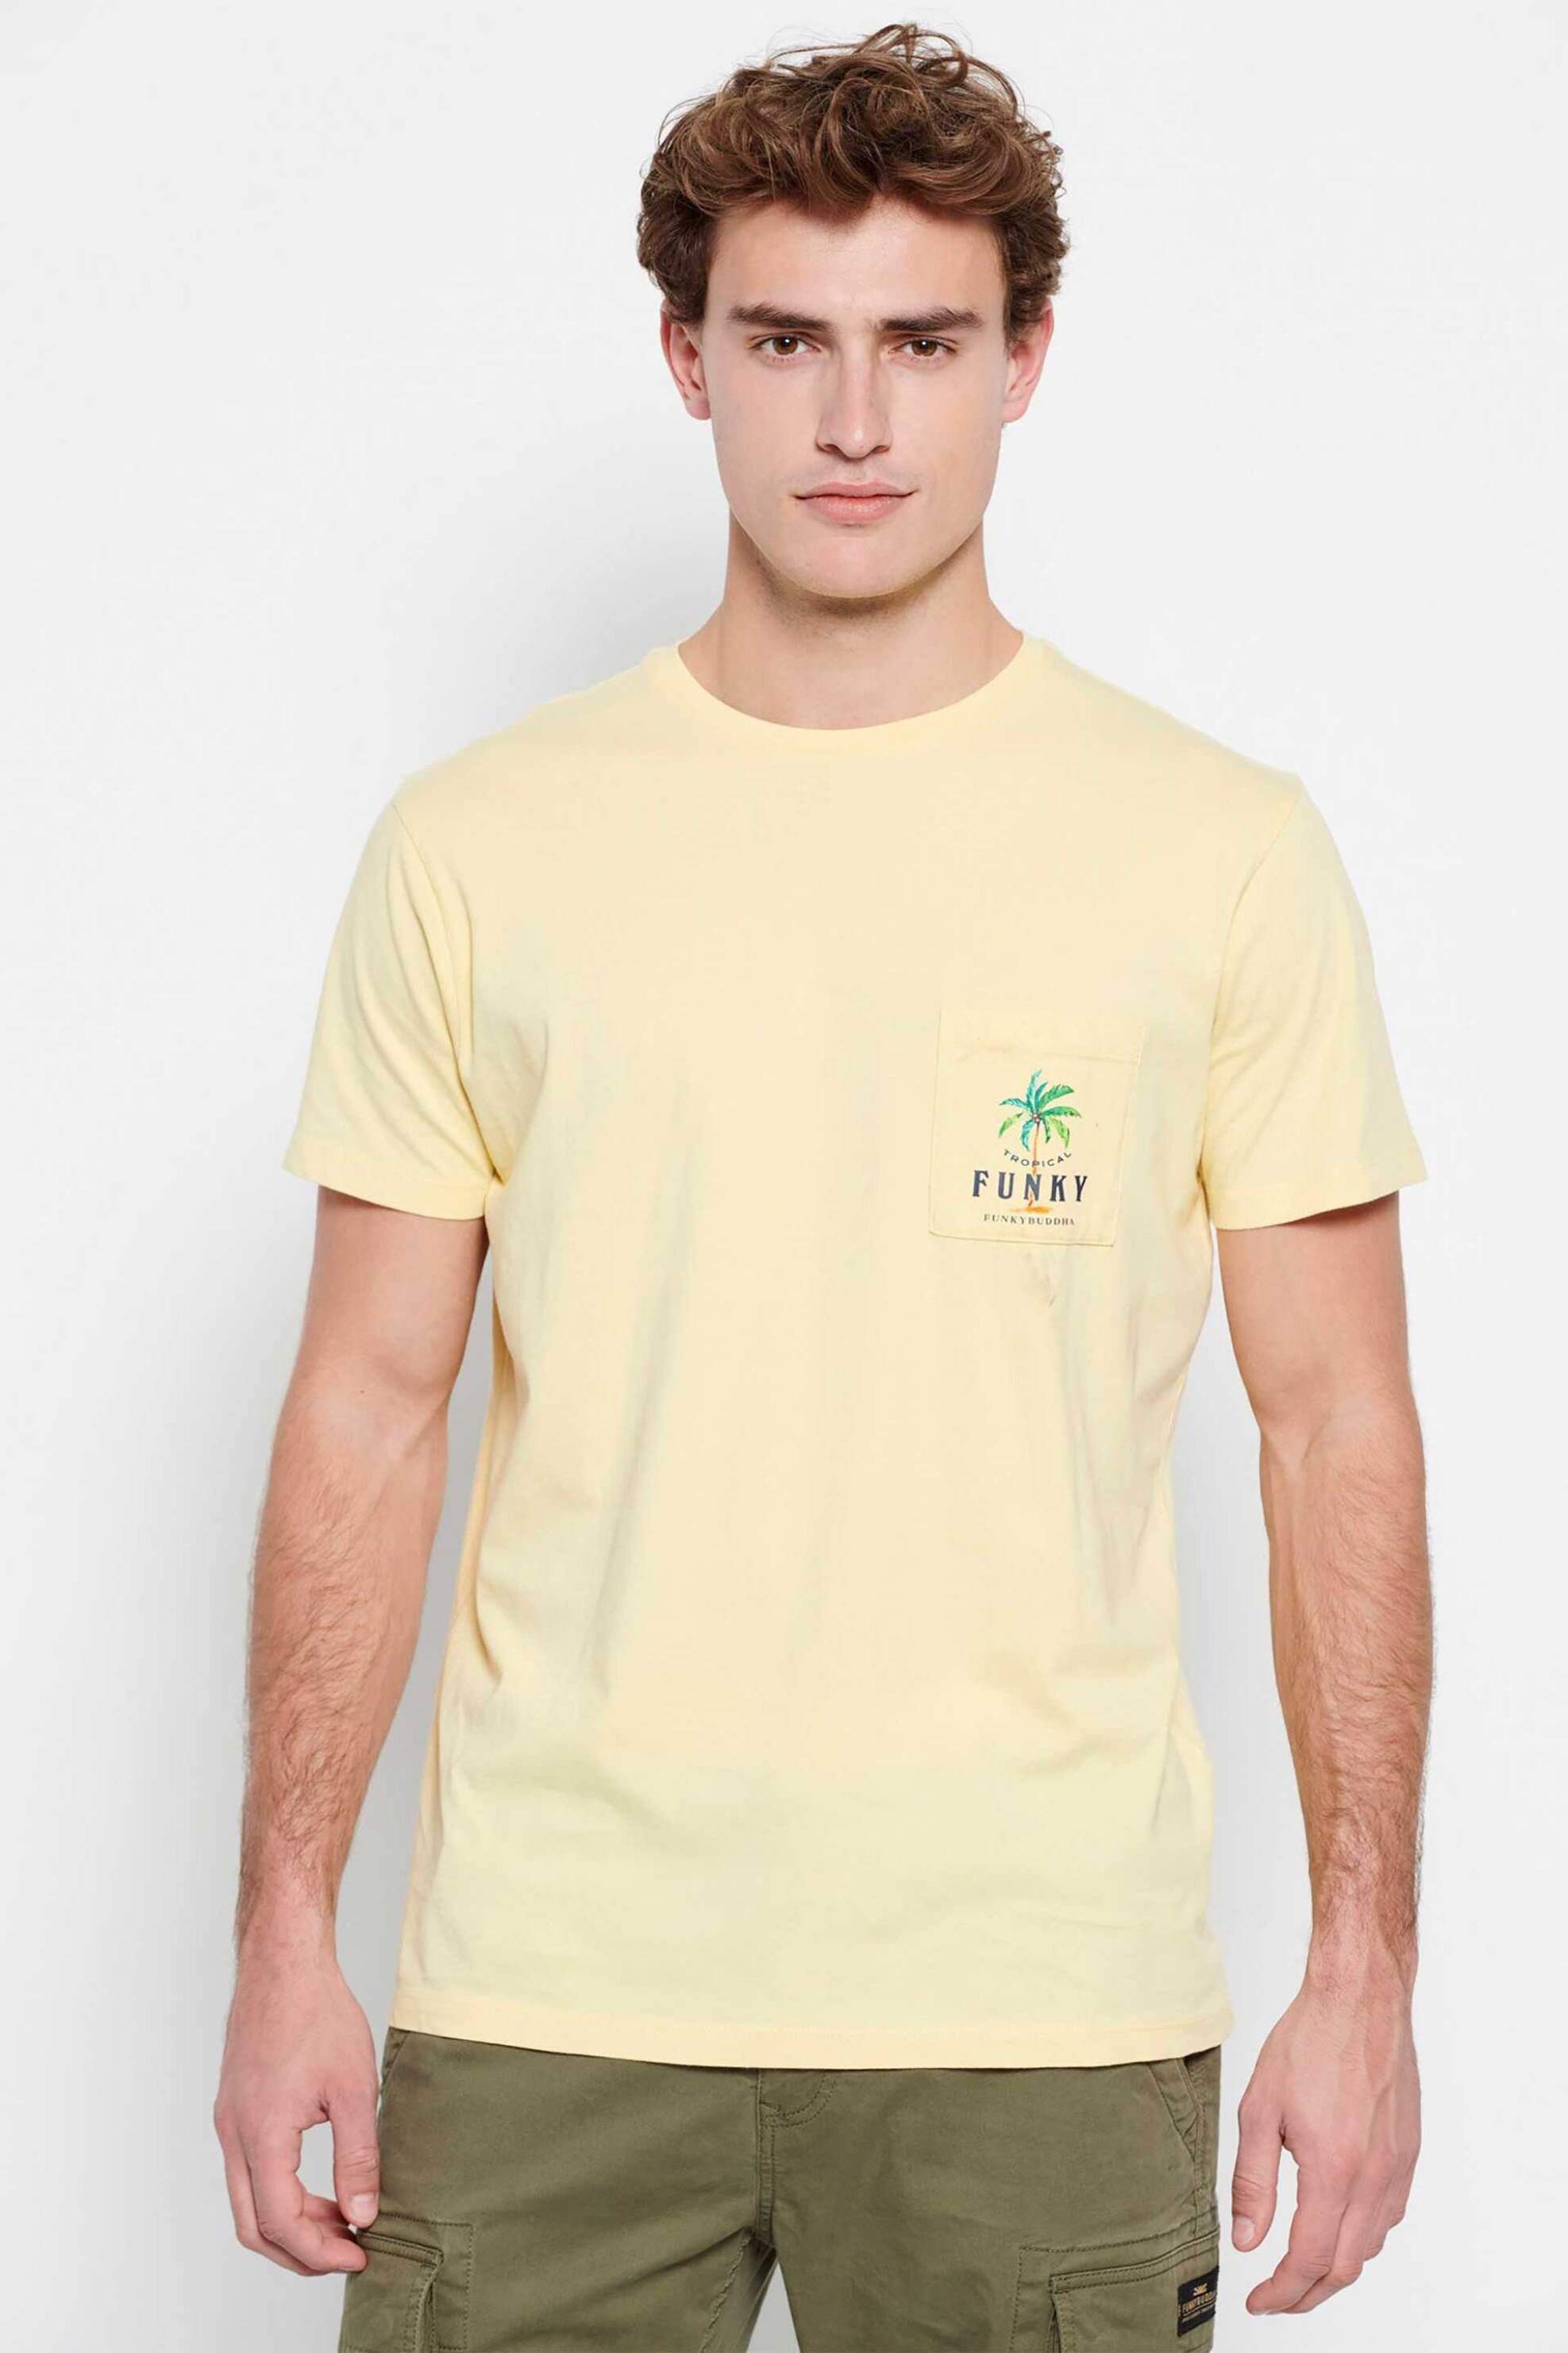 Ανδρική Μόδα > Ανδρικά Ρούχα > Ανδρικές Μπλούζες > Ανδρικά T-Shirts Funky Buddha ανδρικό βαμβακερό T-shirt μονόχρωμο με τσέπη και palm tree print στο στήθος - FBM007-385-04 Κίτρινο Ανοιχτό